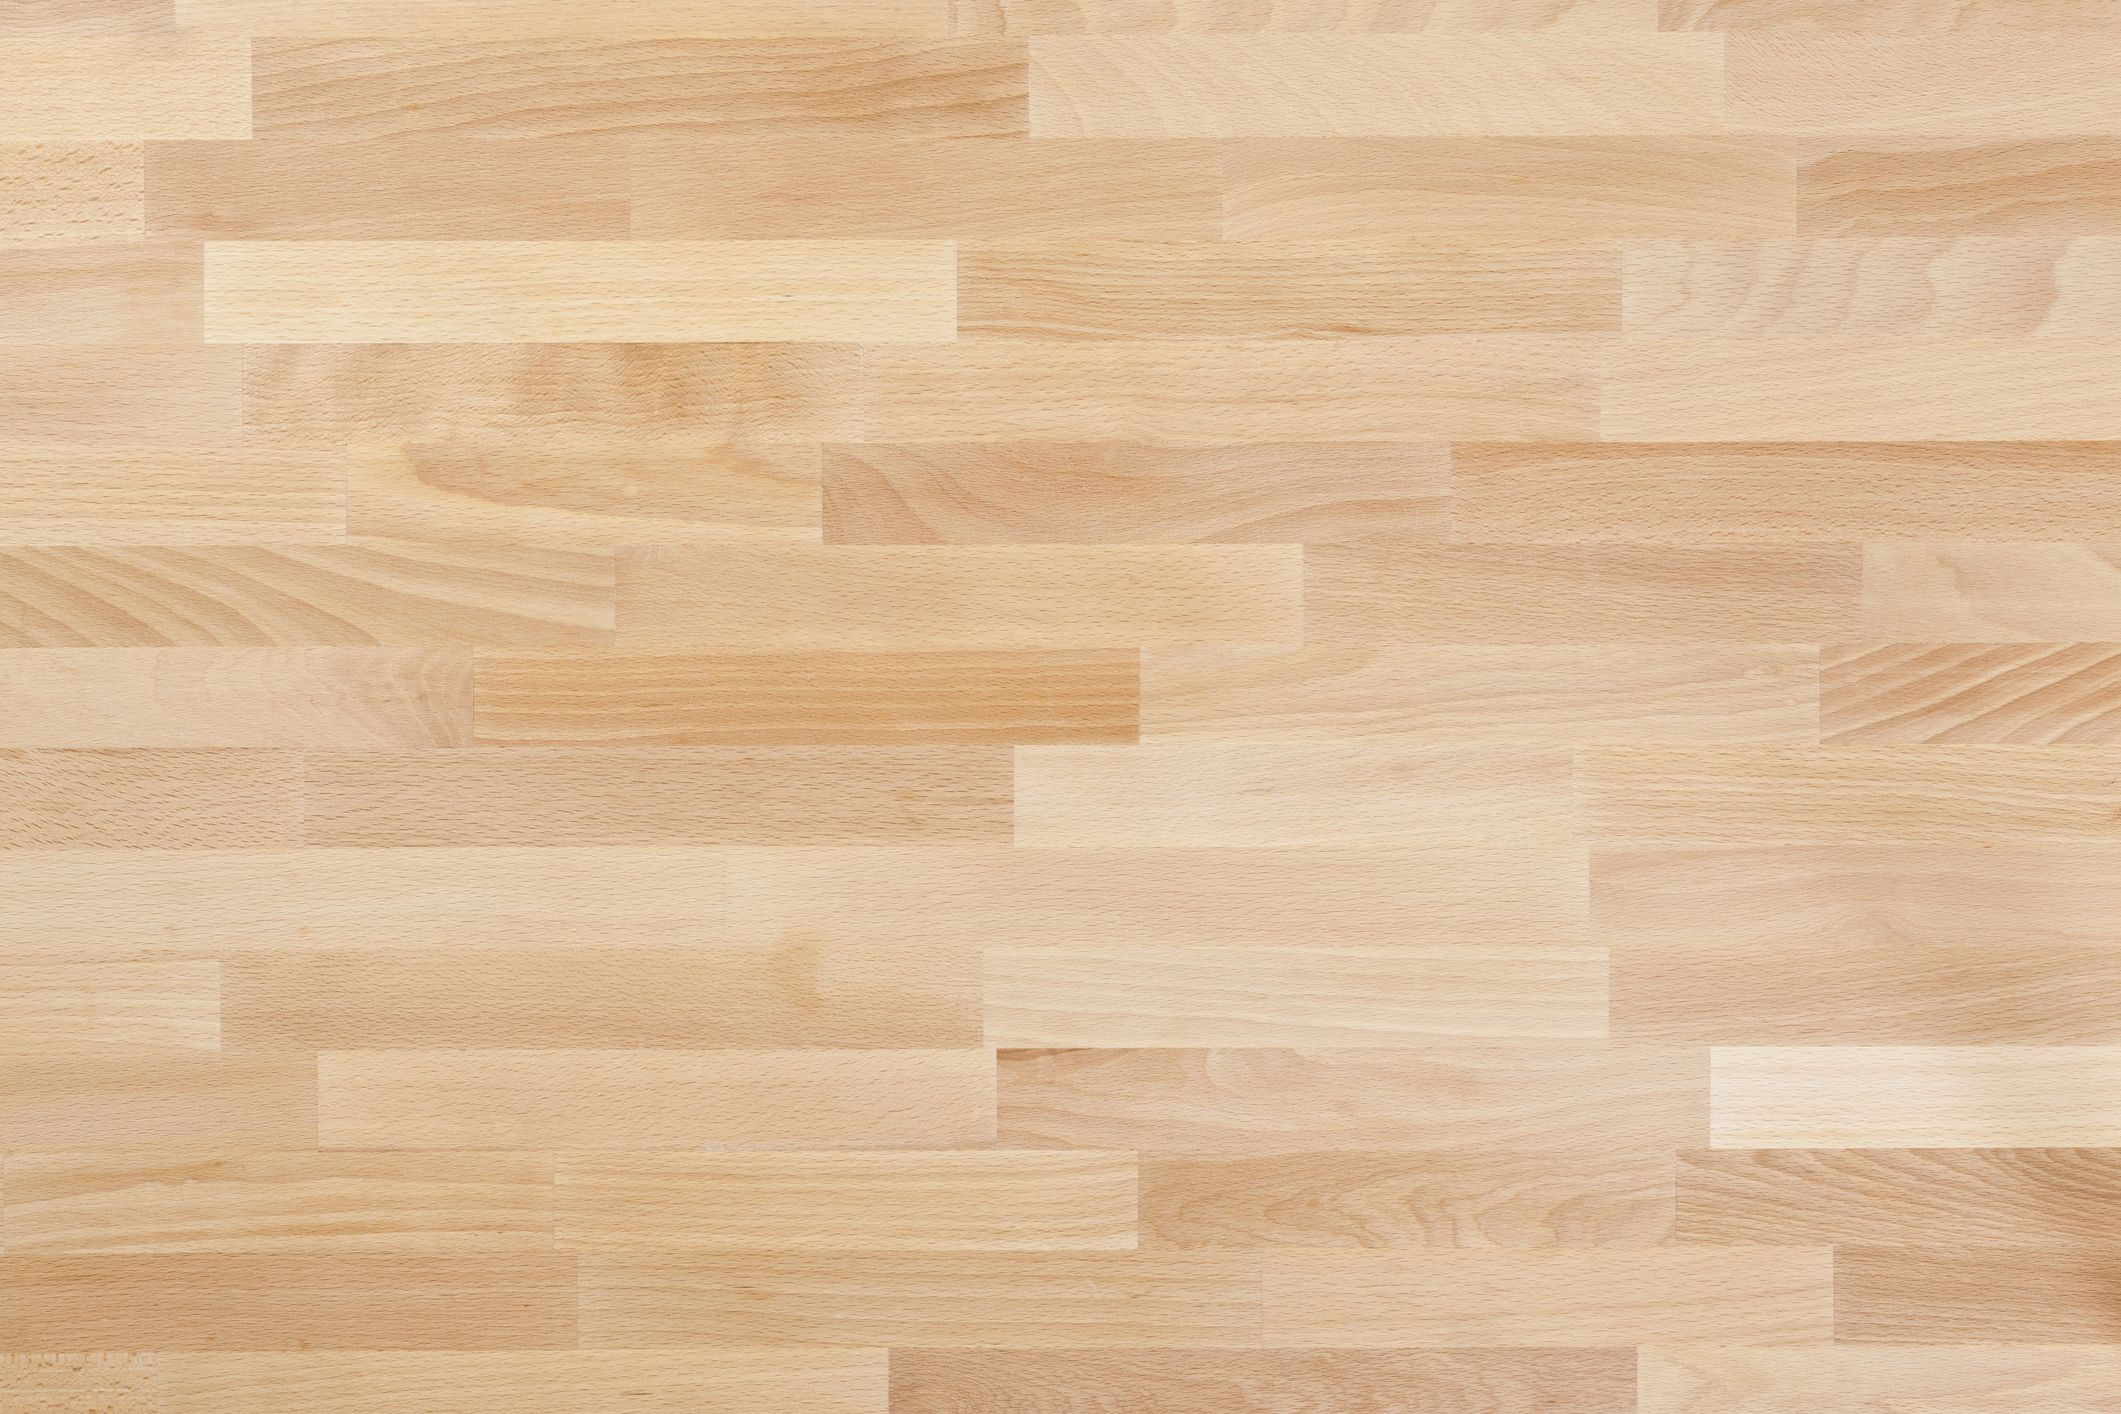 19 Amazing Best Deal Hardwood Floor Moulding Unique Flooring Ideas